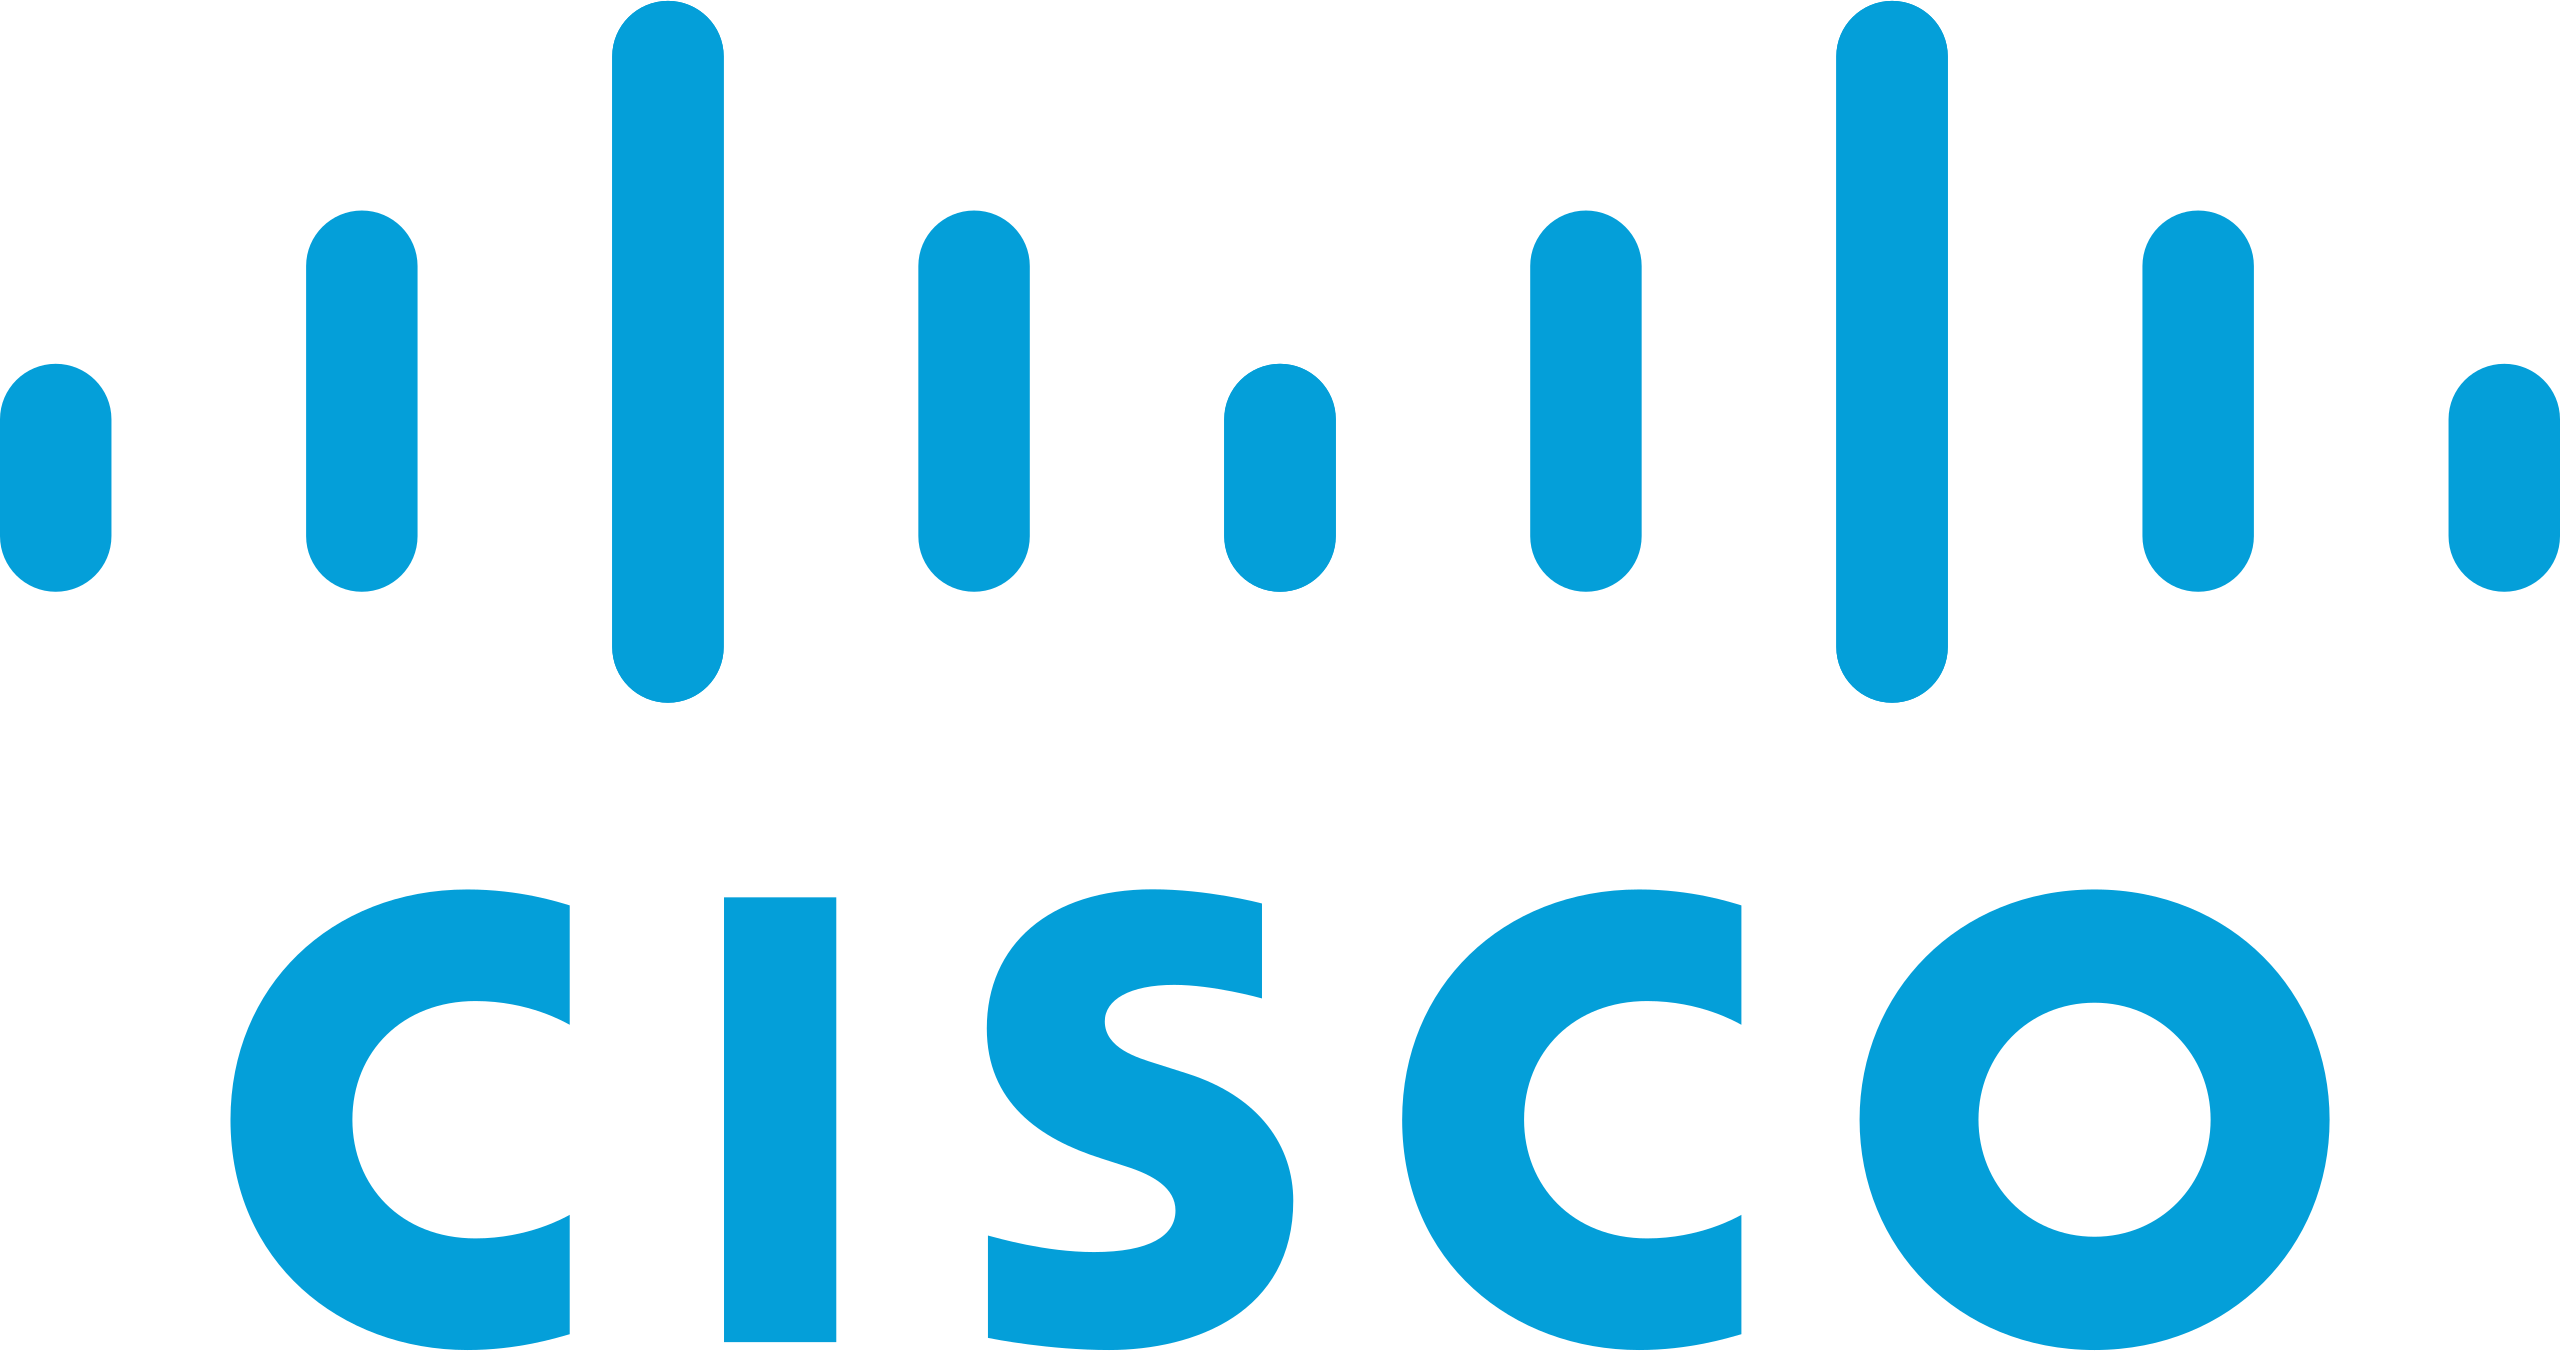 Cisco Brand